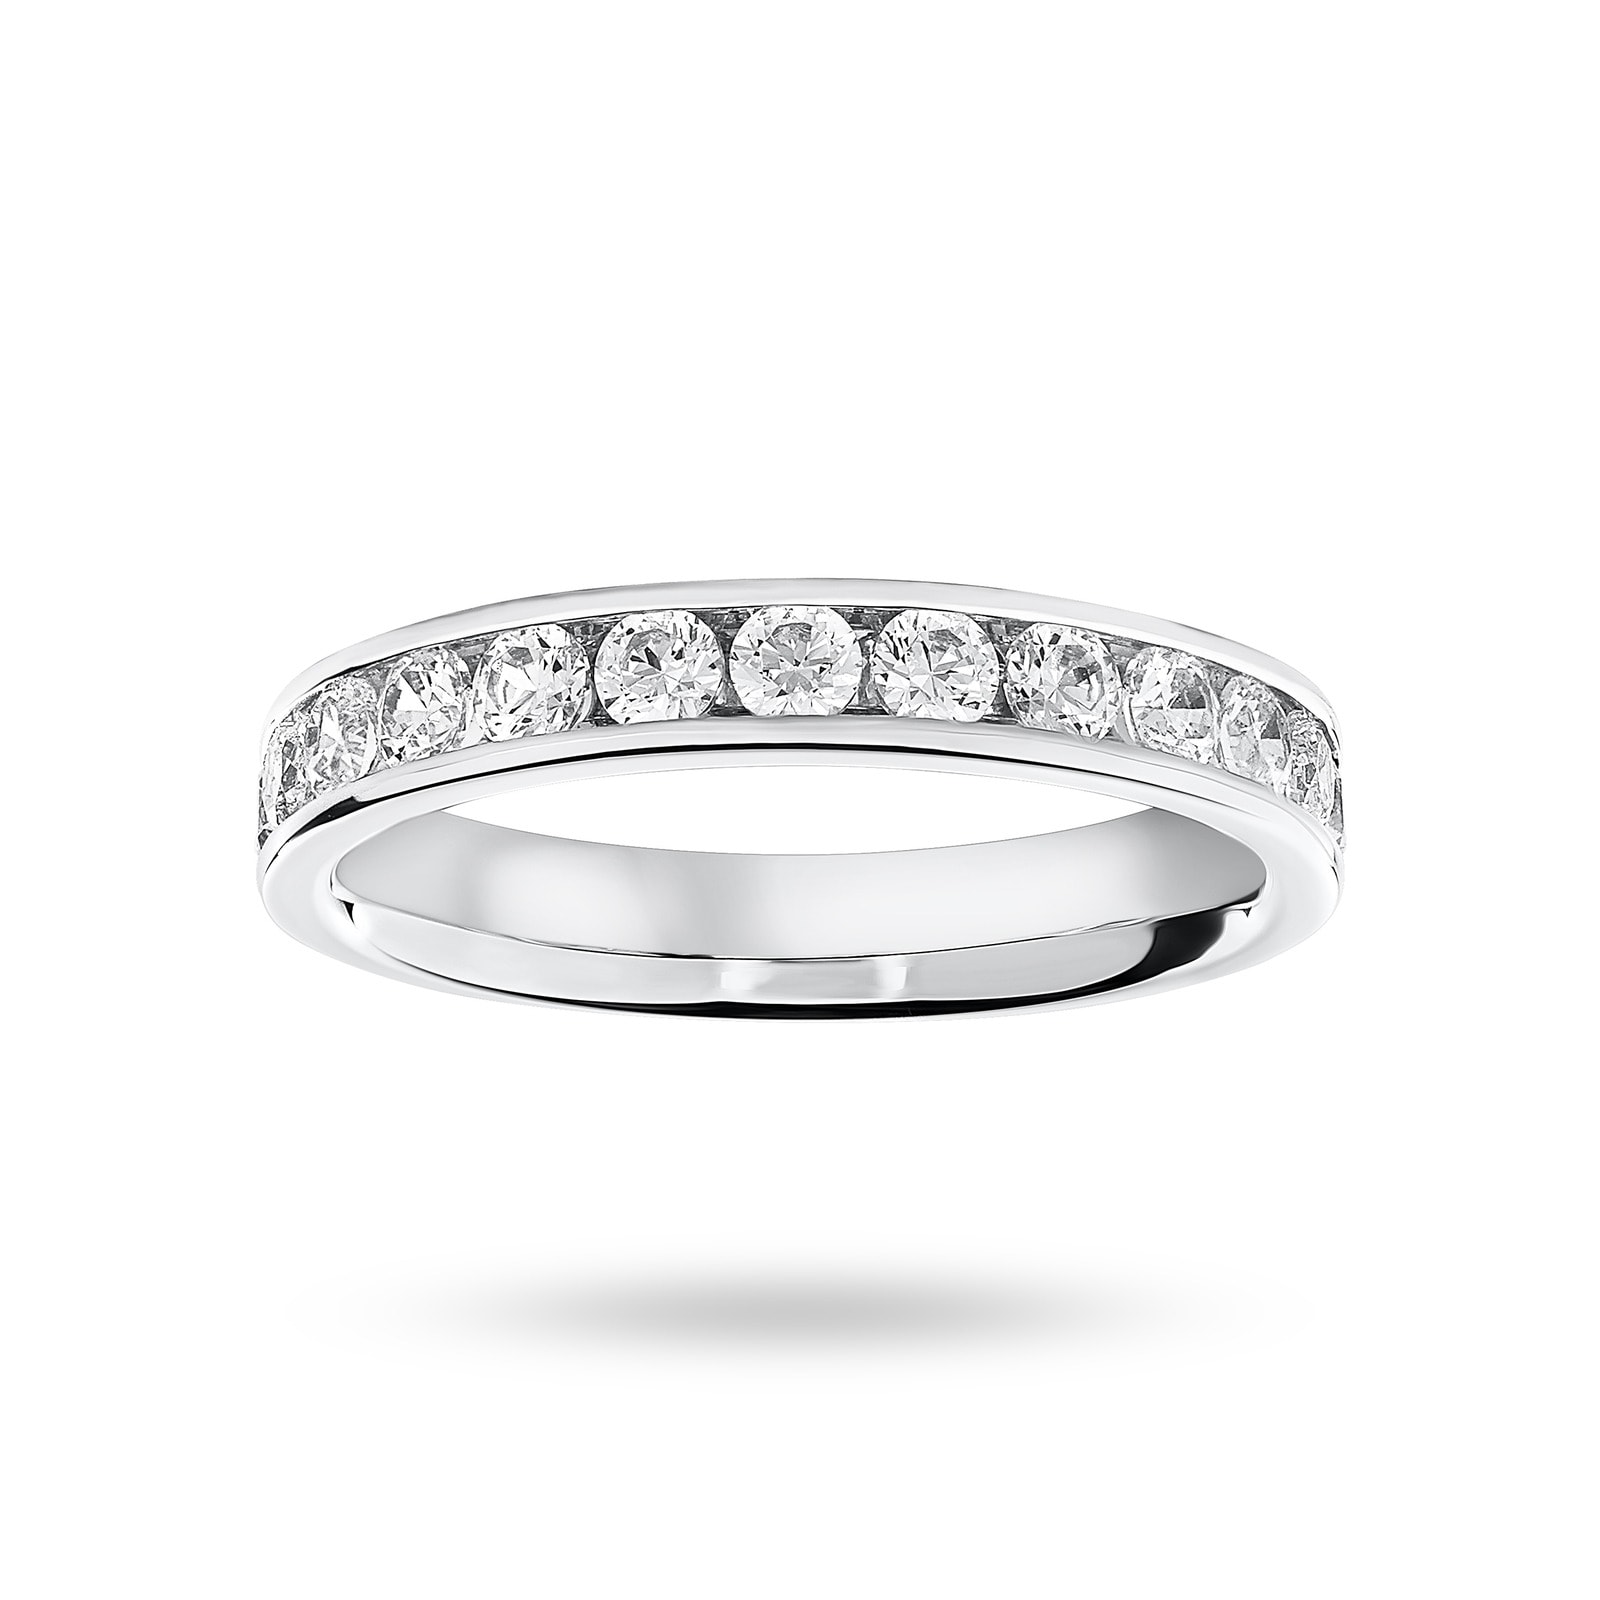 Platinum 0.75 Carat Brilliant Cut Half Eternity Ring - Ring Size L